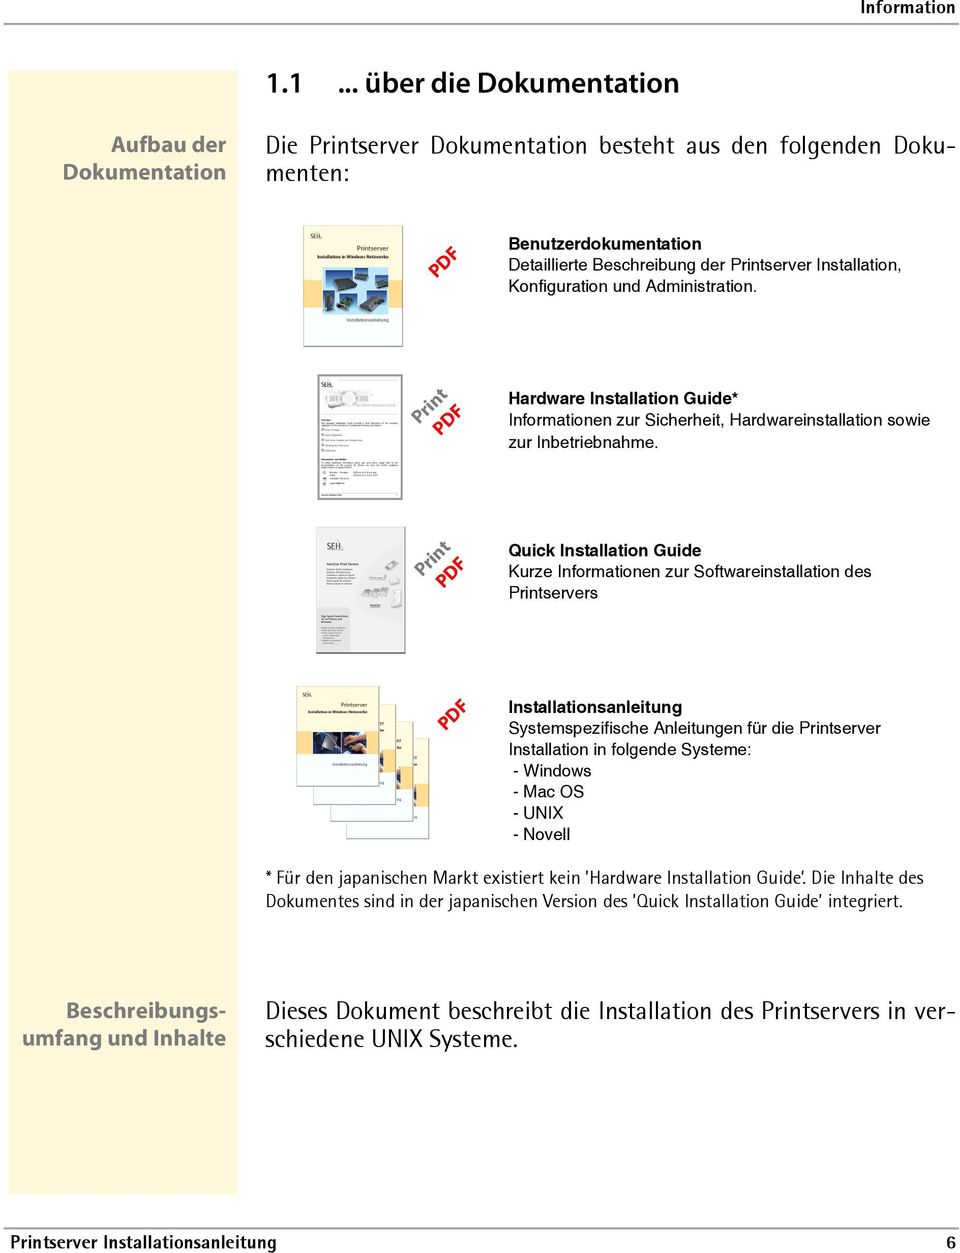 Print PDF Quick Installation Guide Kurze Informationen zur Softwareinstallation des Printservers PDF Installationsanleitung Systemspezifische Anleitungen für die Printserver Installation in folgende